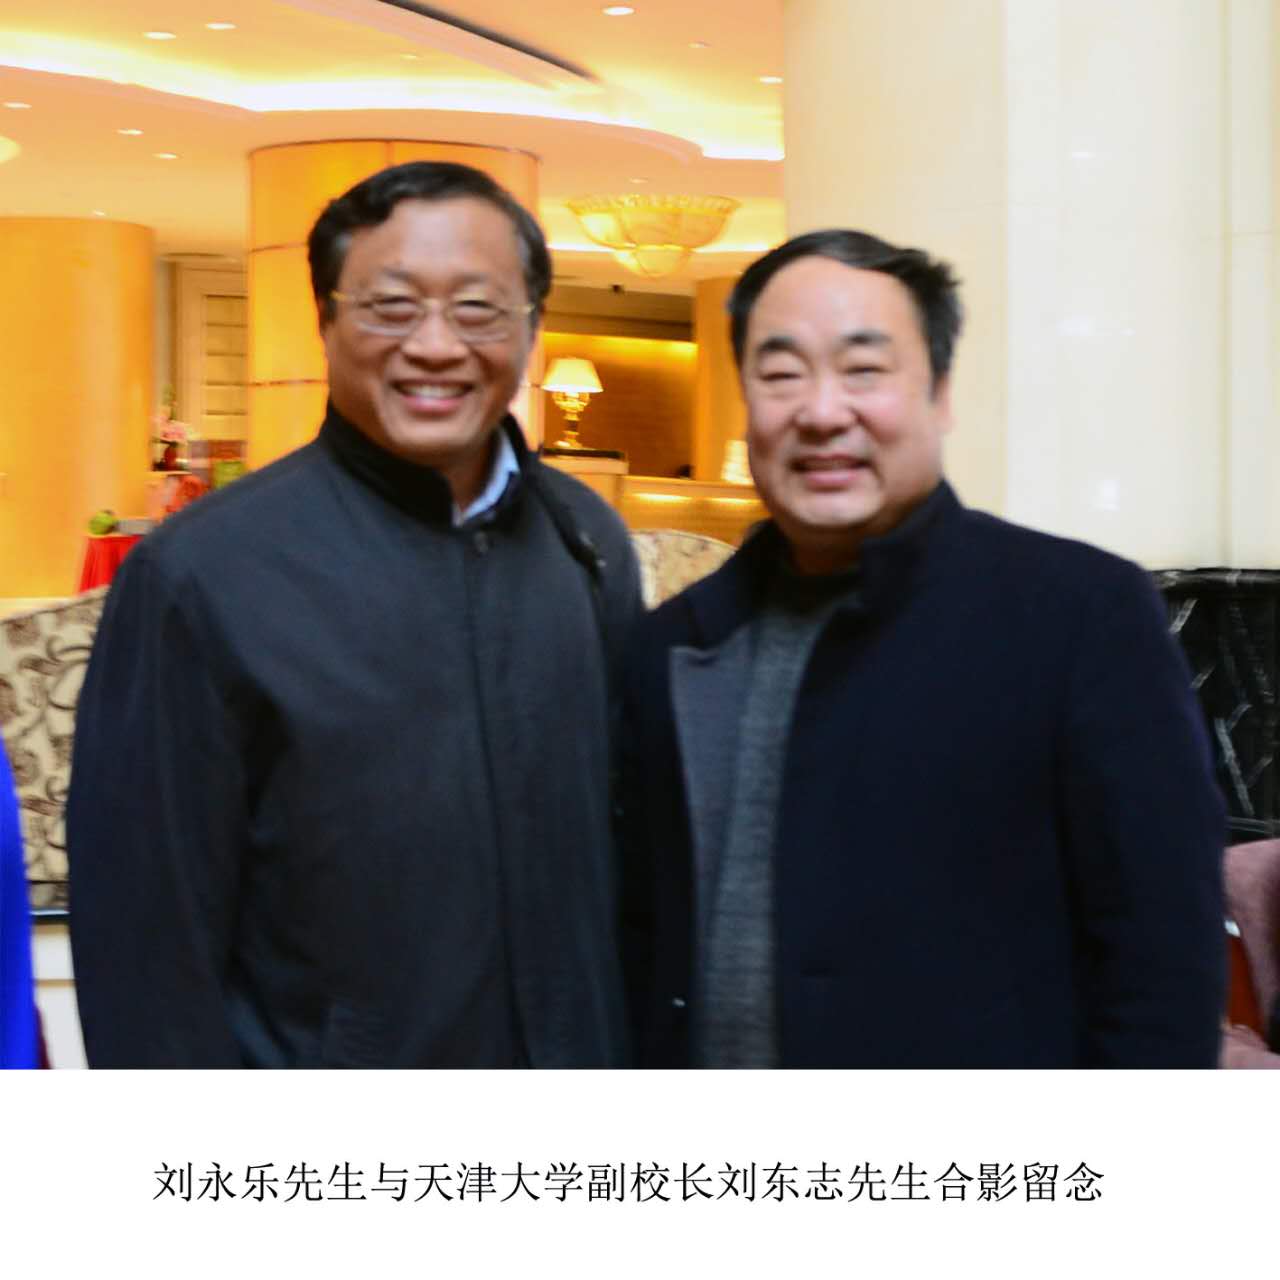 刘永乐先生与天津大学副校长刘东志先生合影留念(图1)